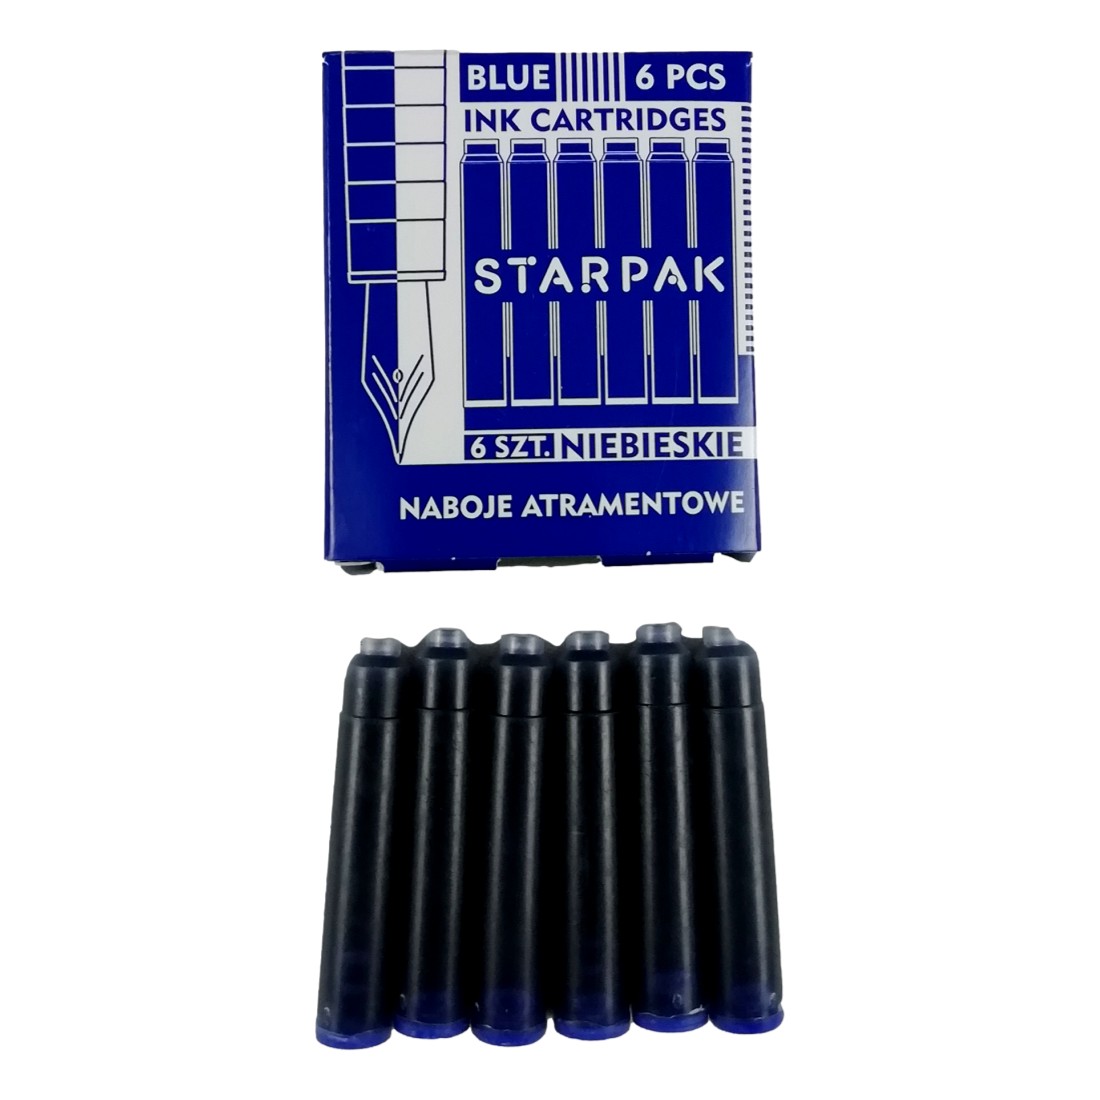 12 Cartouches d'Encre Bleue Effaçable 38x5,5mm Stylo Plume Recharge Standard